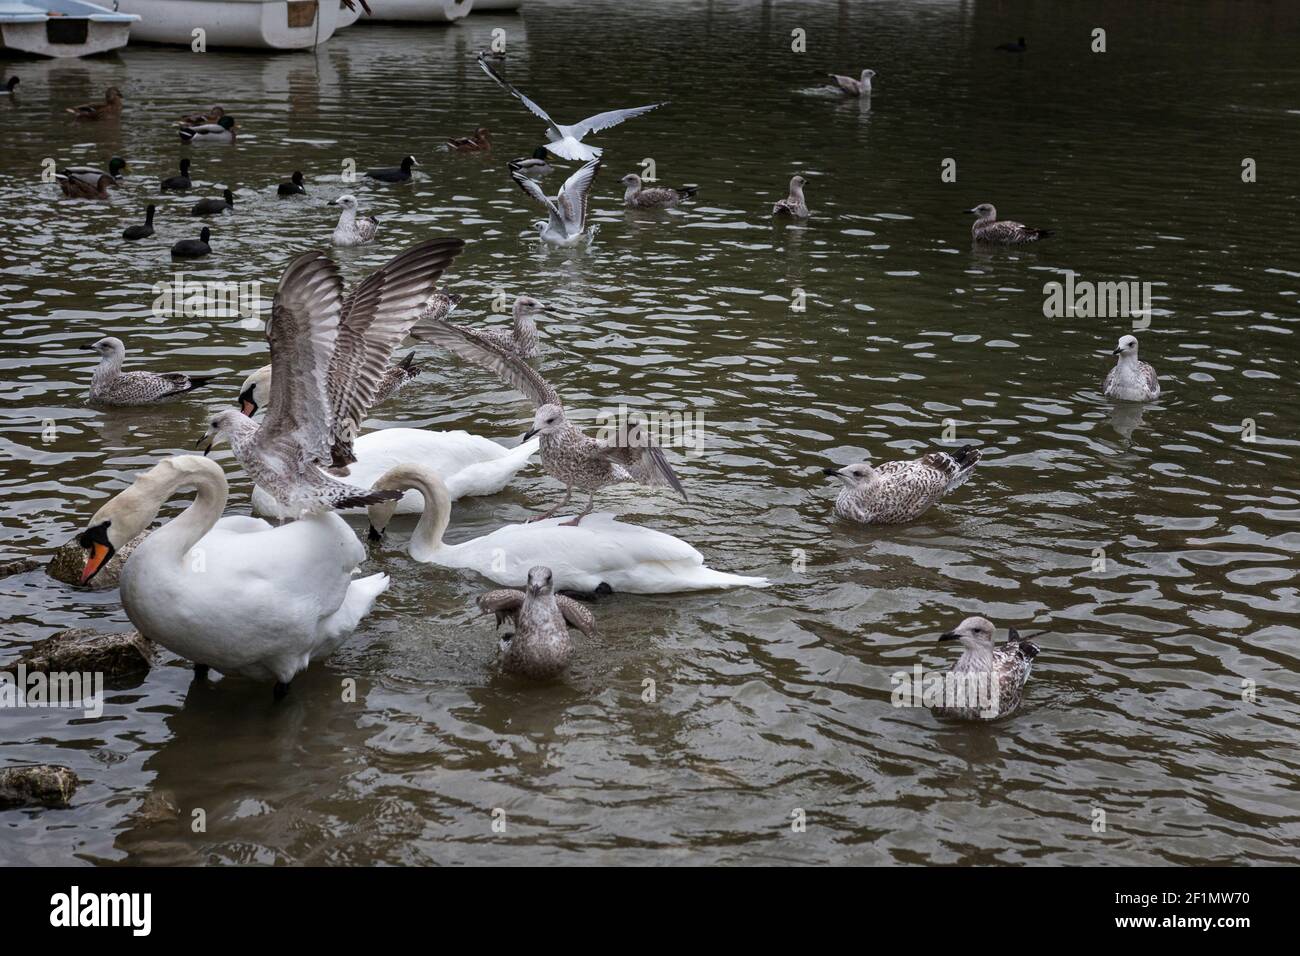 Cygnes et goélands nourrissant le lac de Swanbourne, Arundel, avec les goélands qui atterrissent sur les cygnes Banque D'Images